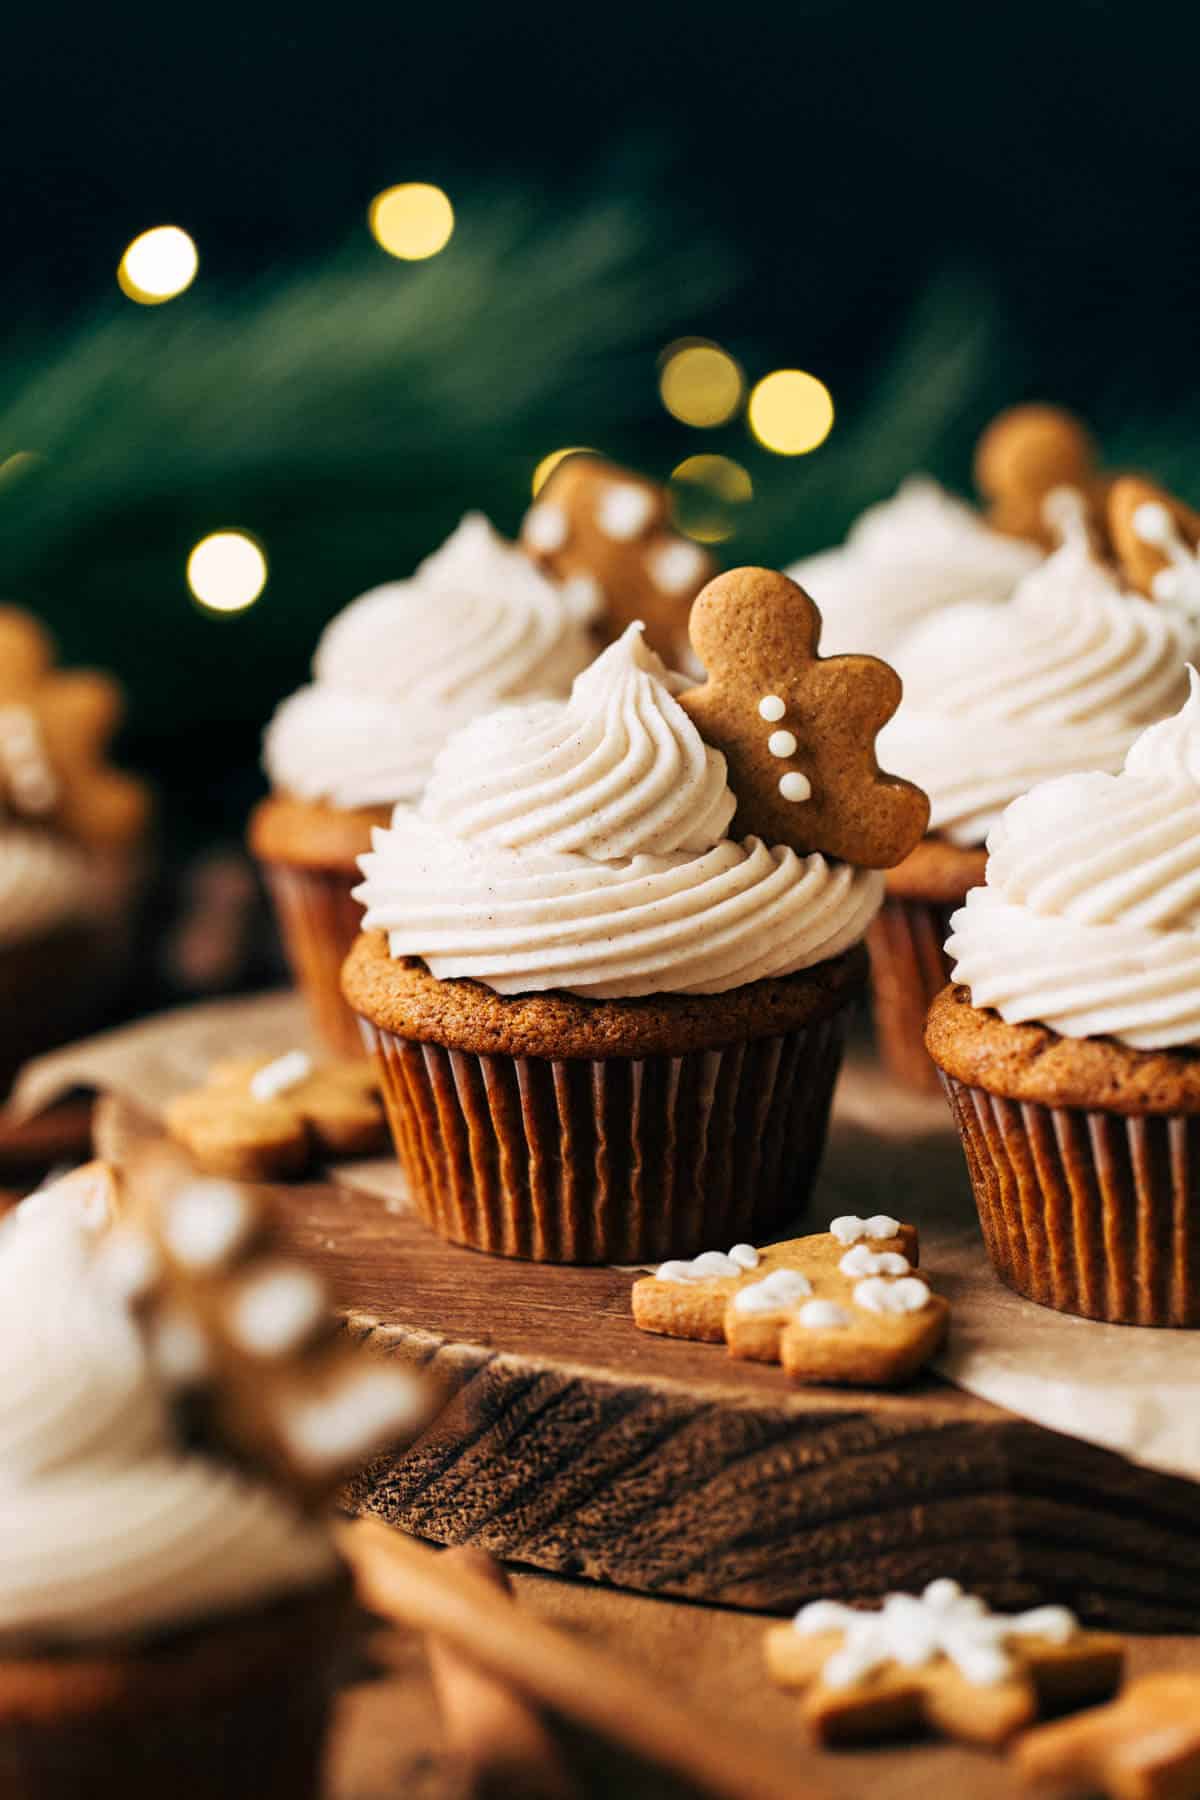 https://butternutbakeryblog.com/wp-content/uploads/2018/12/gingerbread-cupcakes-1.jpg